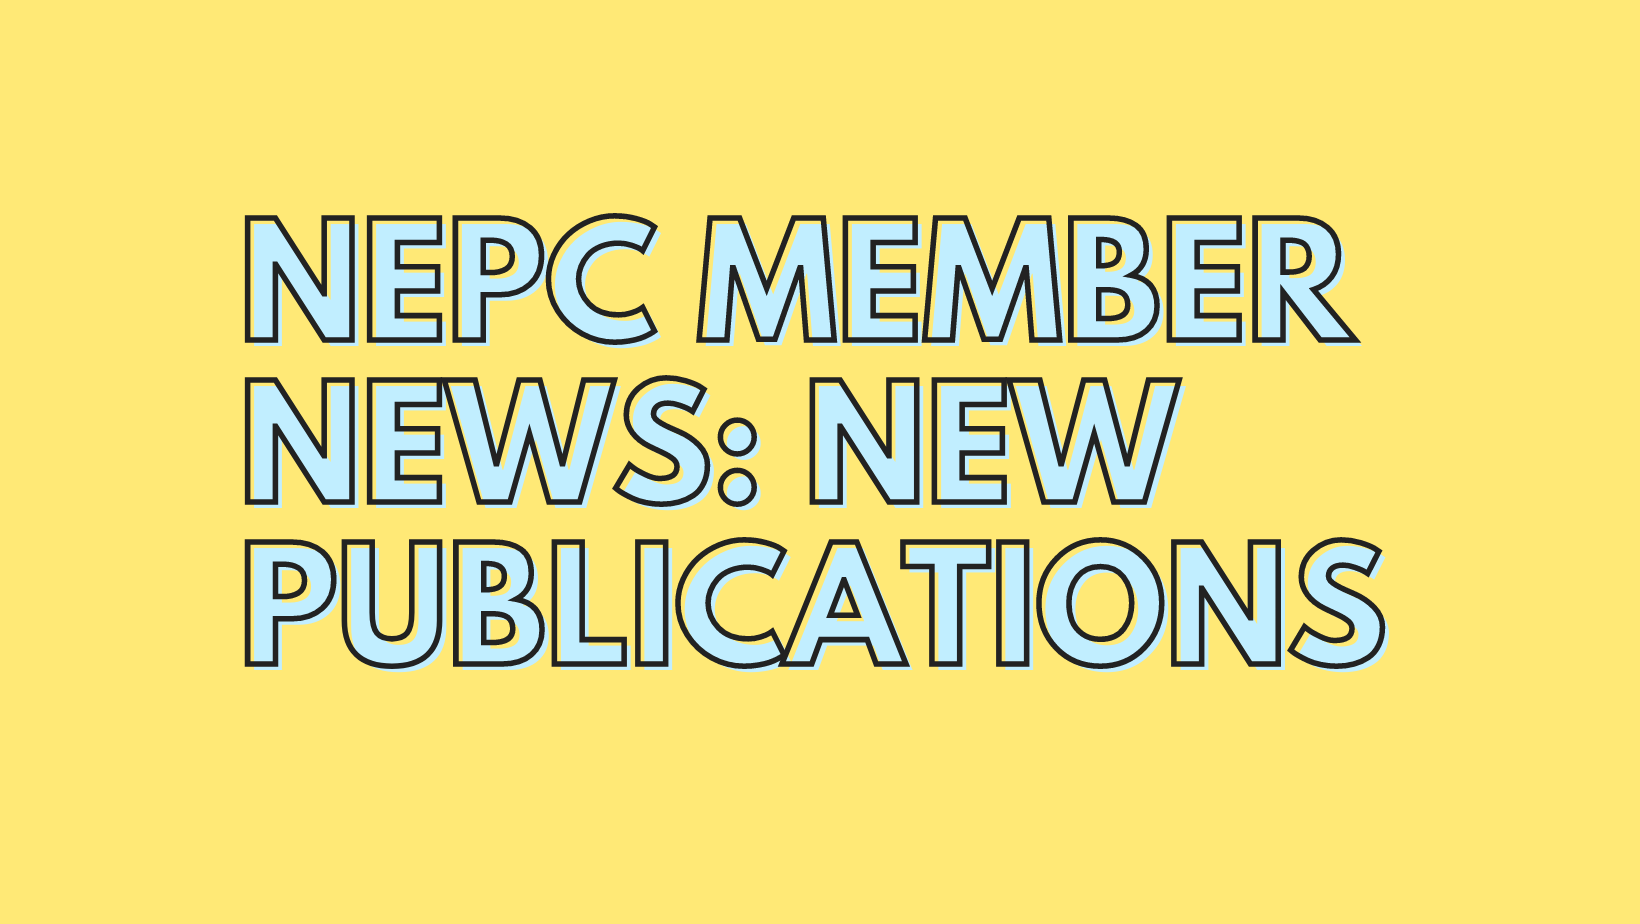 Member Publication News for January 2023